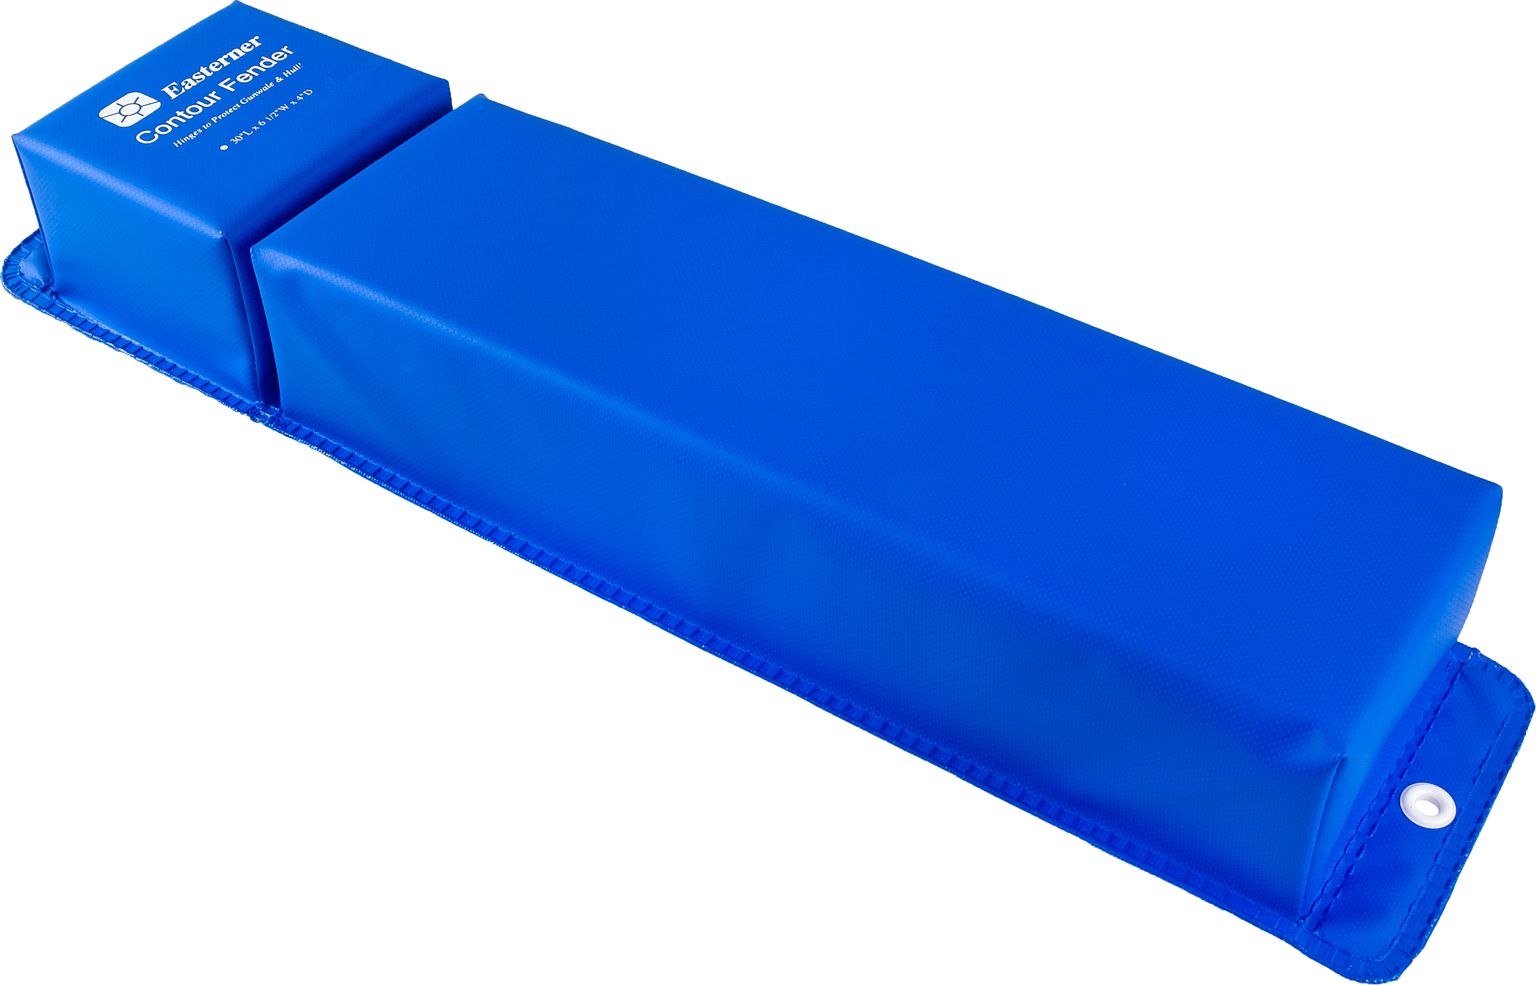 Кранец причальный угловой 760x155 мм, синий (упаковка из 10 шт.) C11930L_pkg_10 savic nestor corner s2003 туалет домик угловой для кошек синий